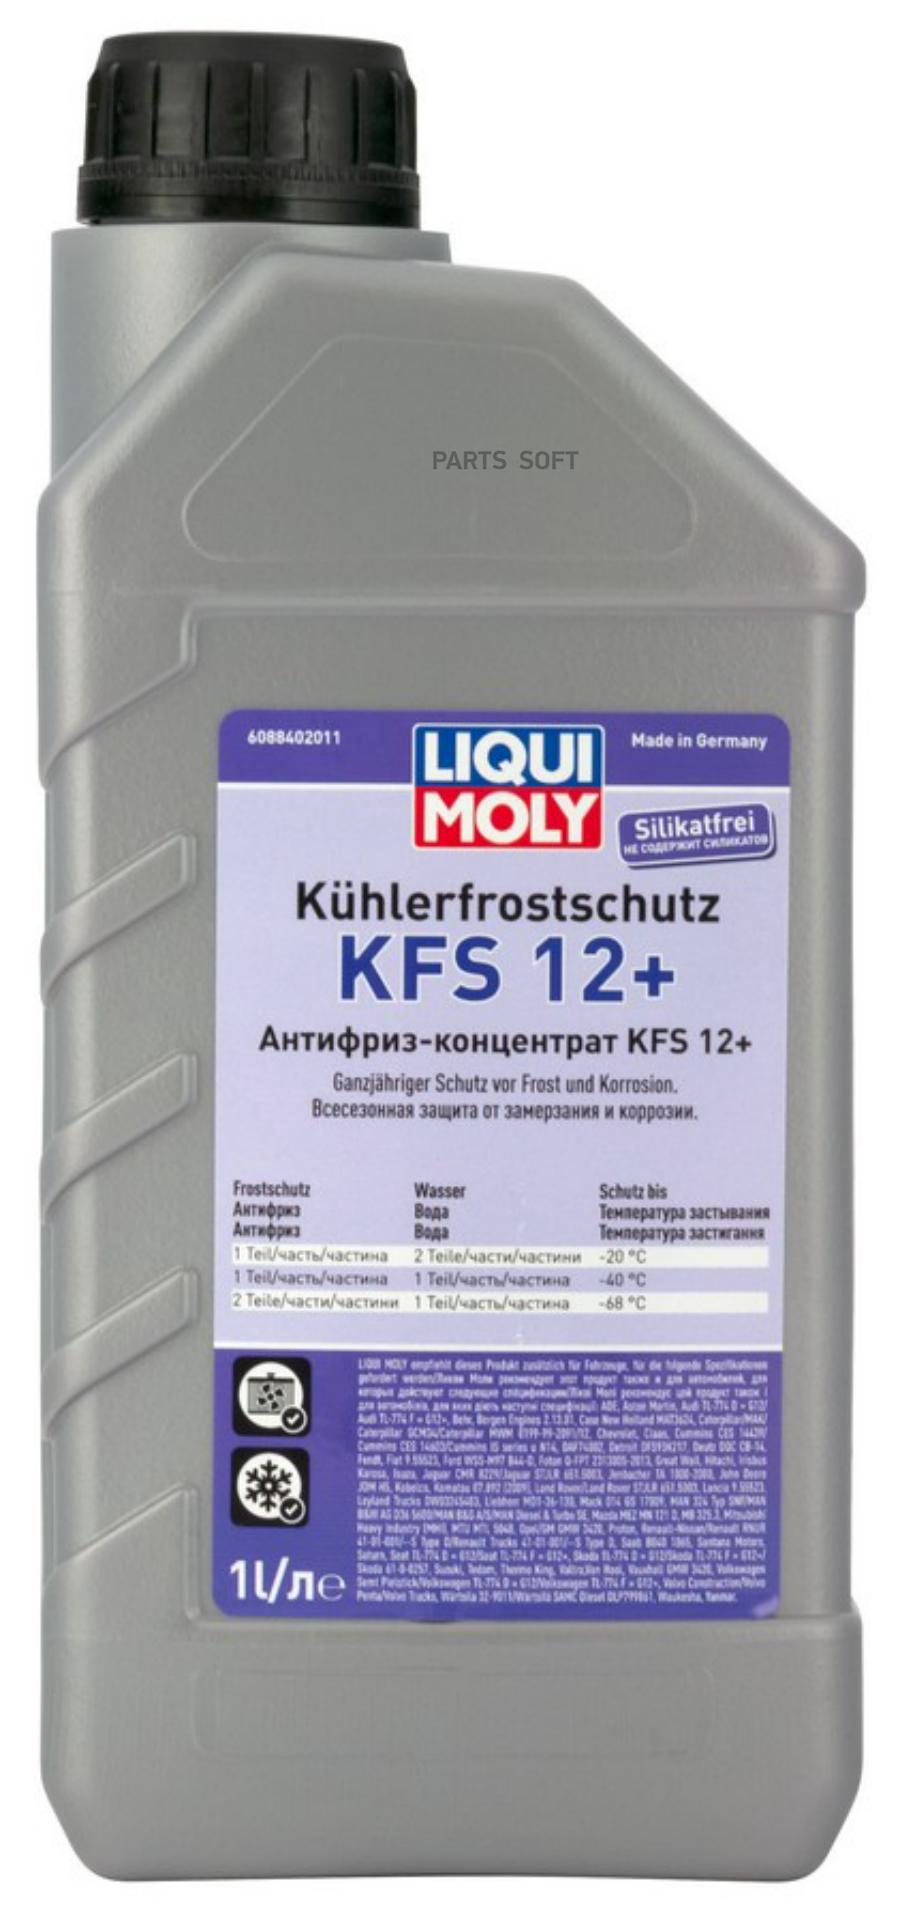 LiquiMoly Kuhlerfrostschutz KFS 2001 Plus G12 1L антифриз красн.конц. 1:1 -40C смеш-ся с G